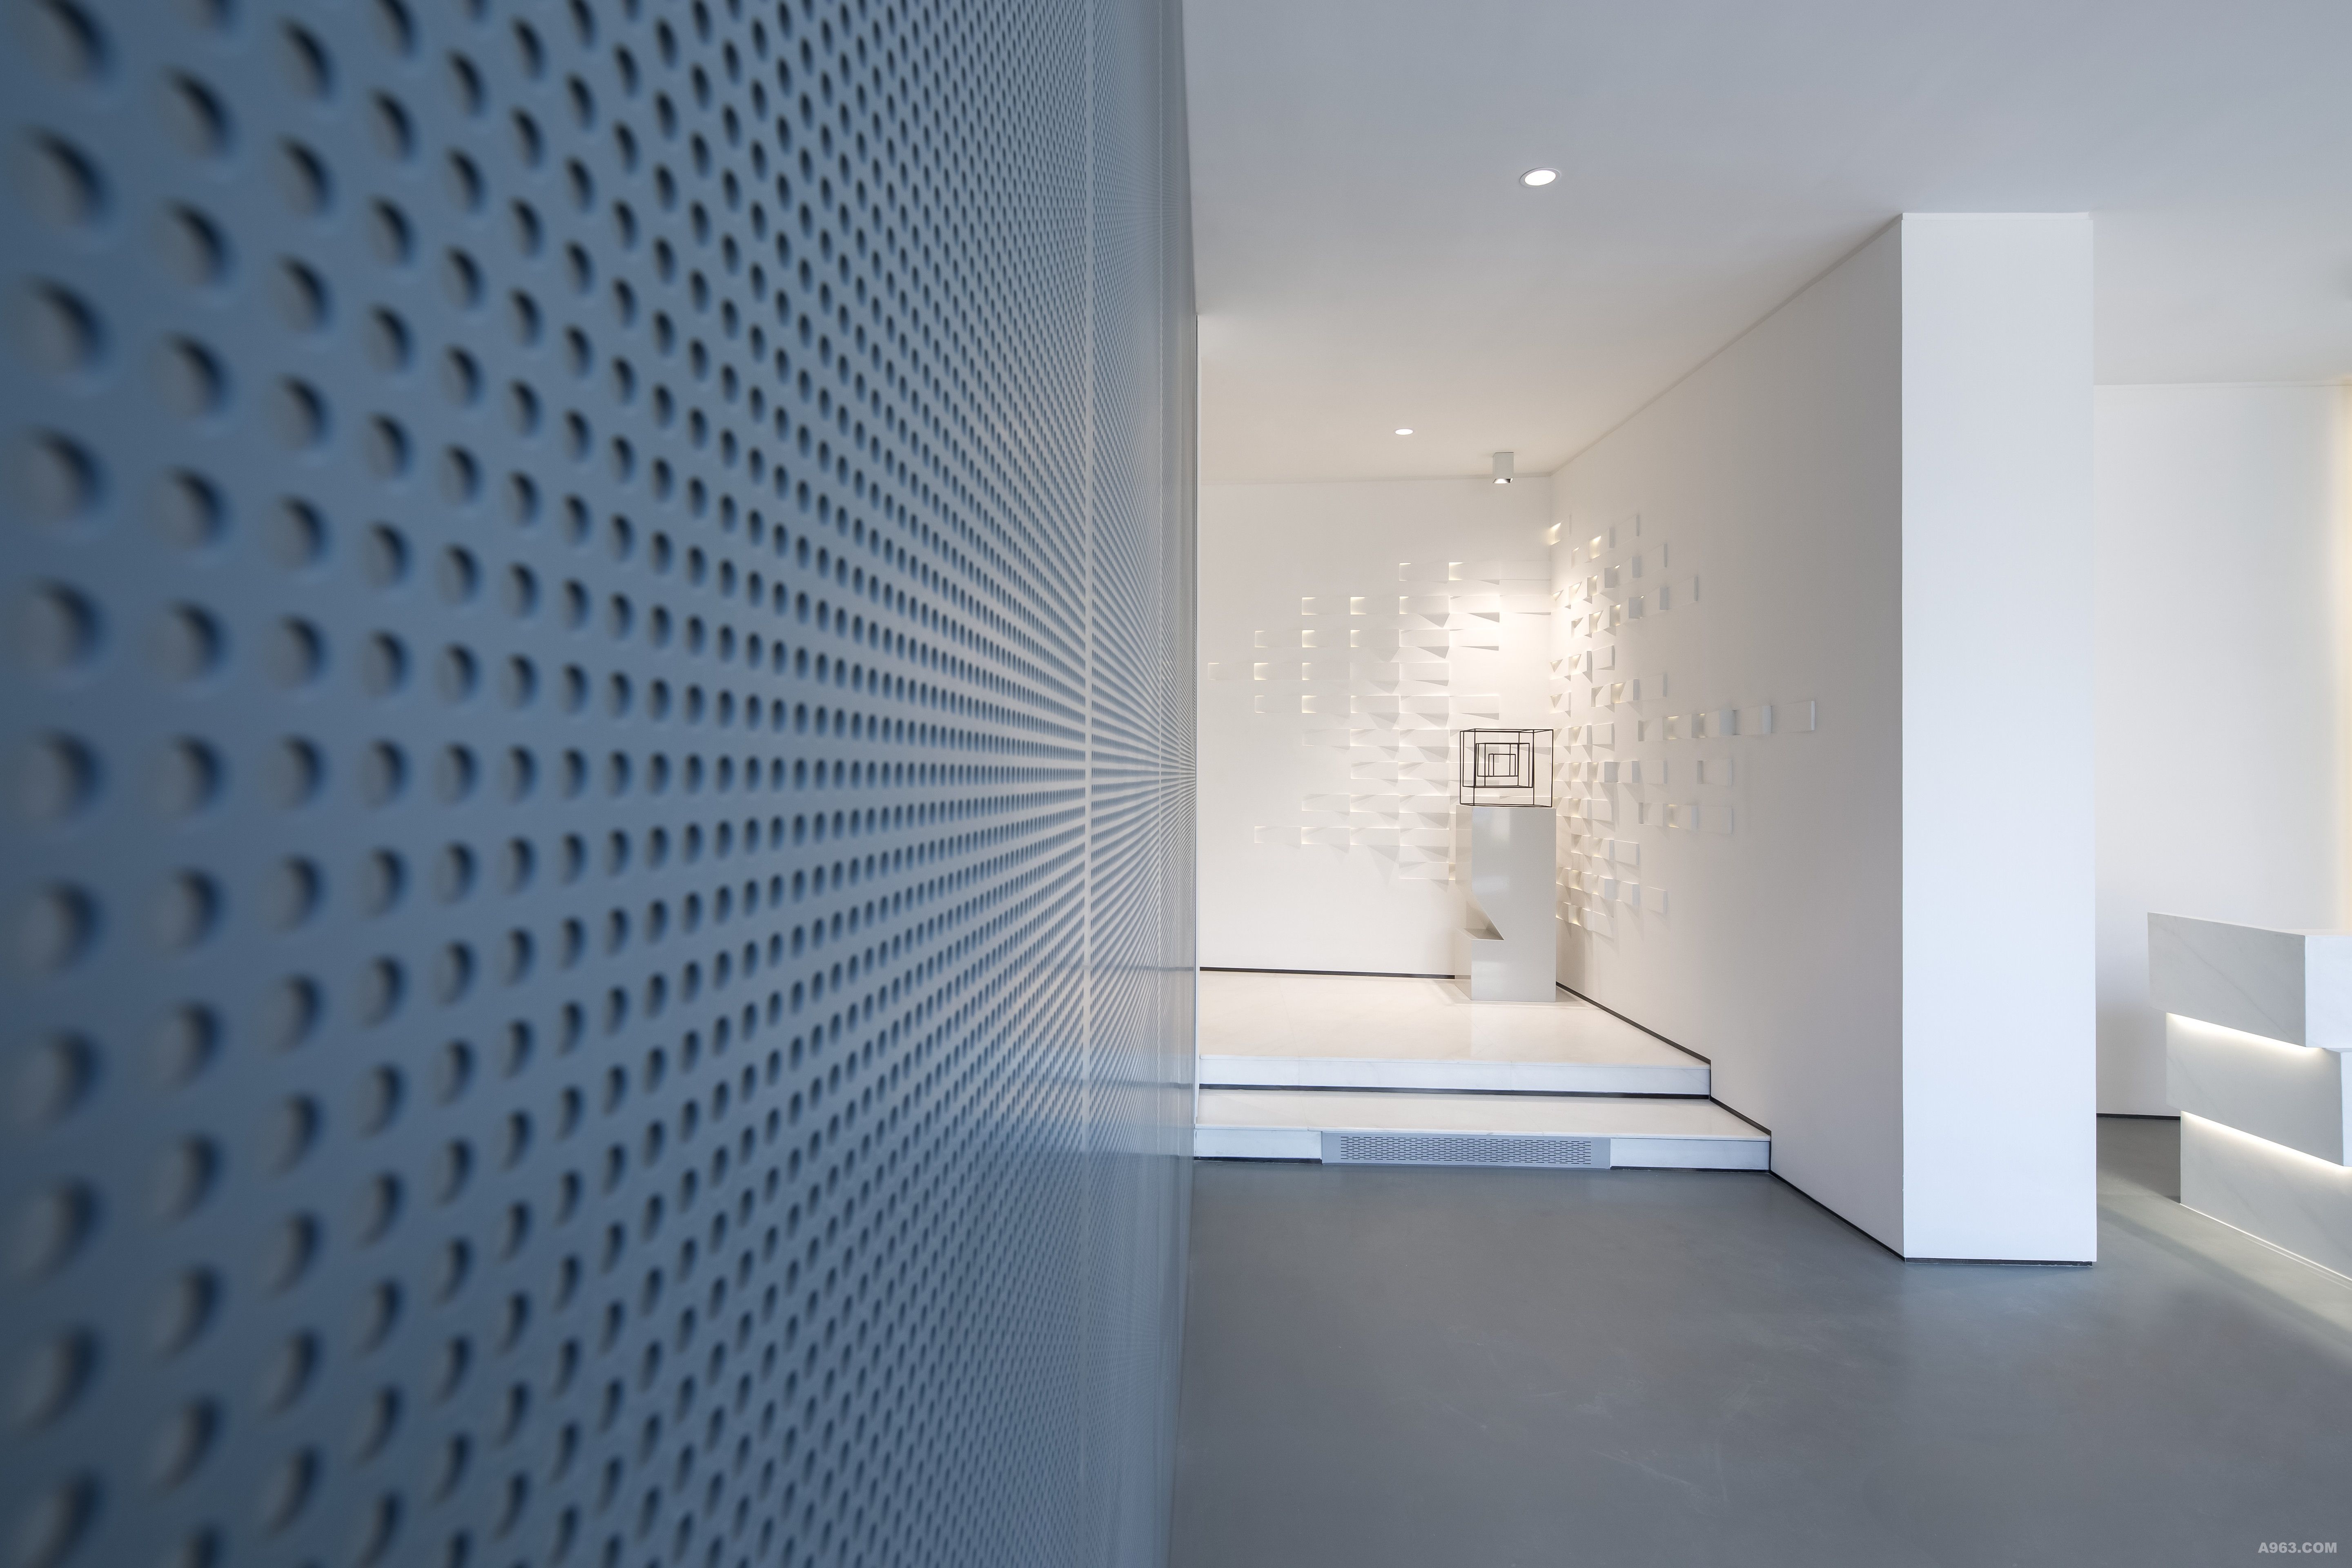 墙面材料选用了充满未来工业设计感的穿孔铝板，在保证空间环保性和舒适度之余，也带来如何解决散热器美观和散热需求的难题。